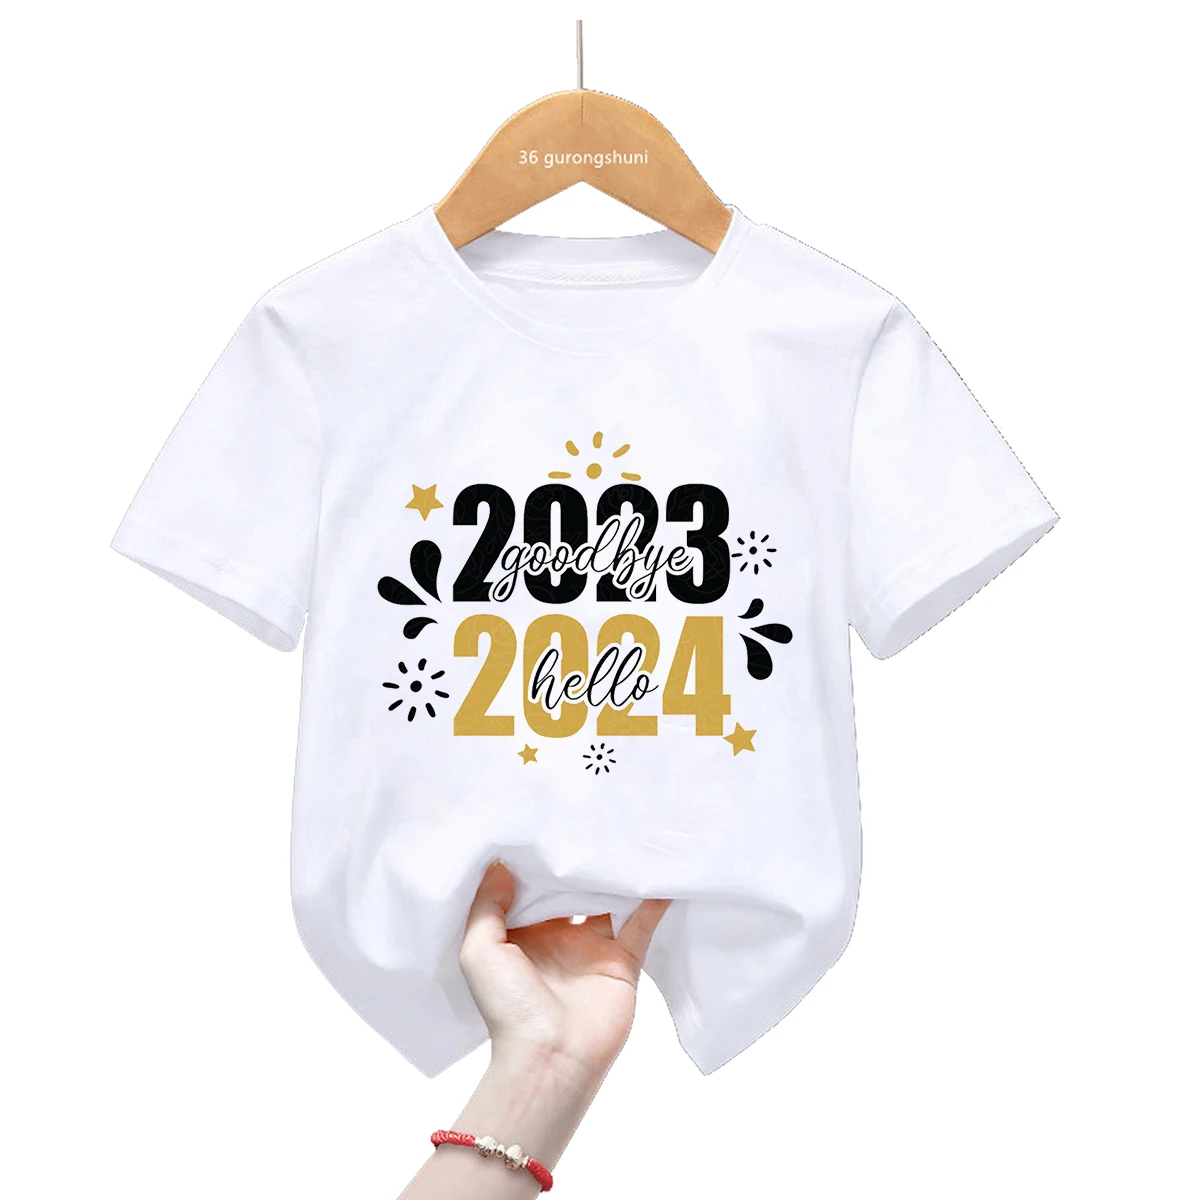 

2023, футболка с надписью «Good Bye Hello» на новый год, Забавная детская одежда, футболка унисекс для мальчиков и девочек, семейная Детская футболка с коротким рукавом, Топ